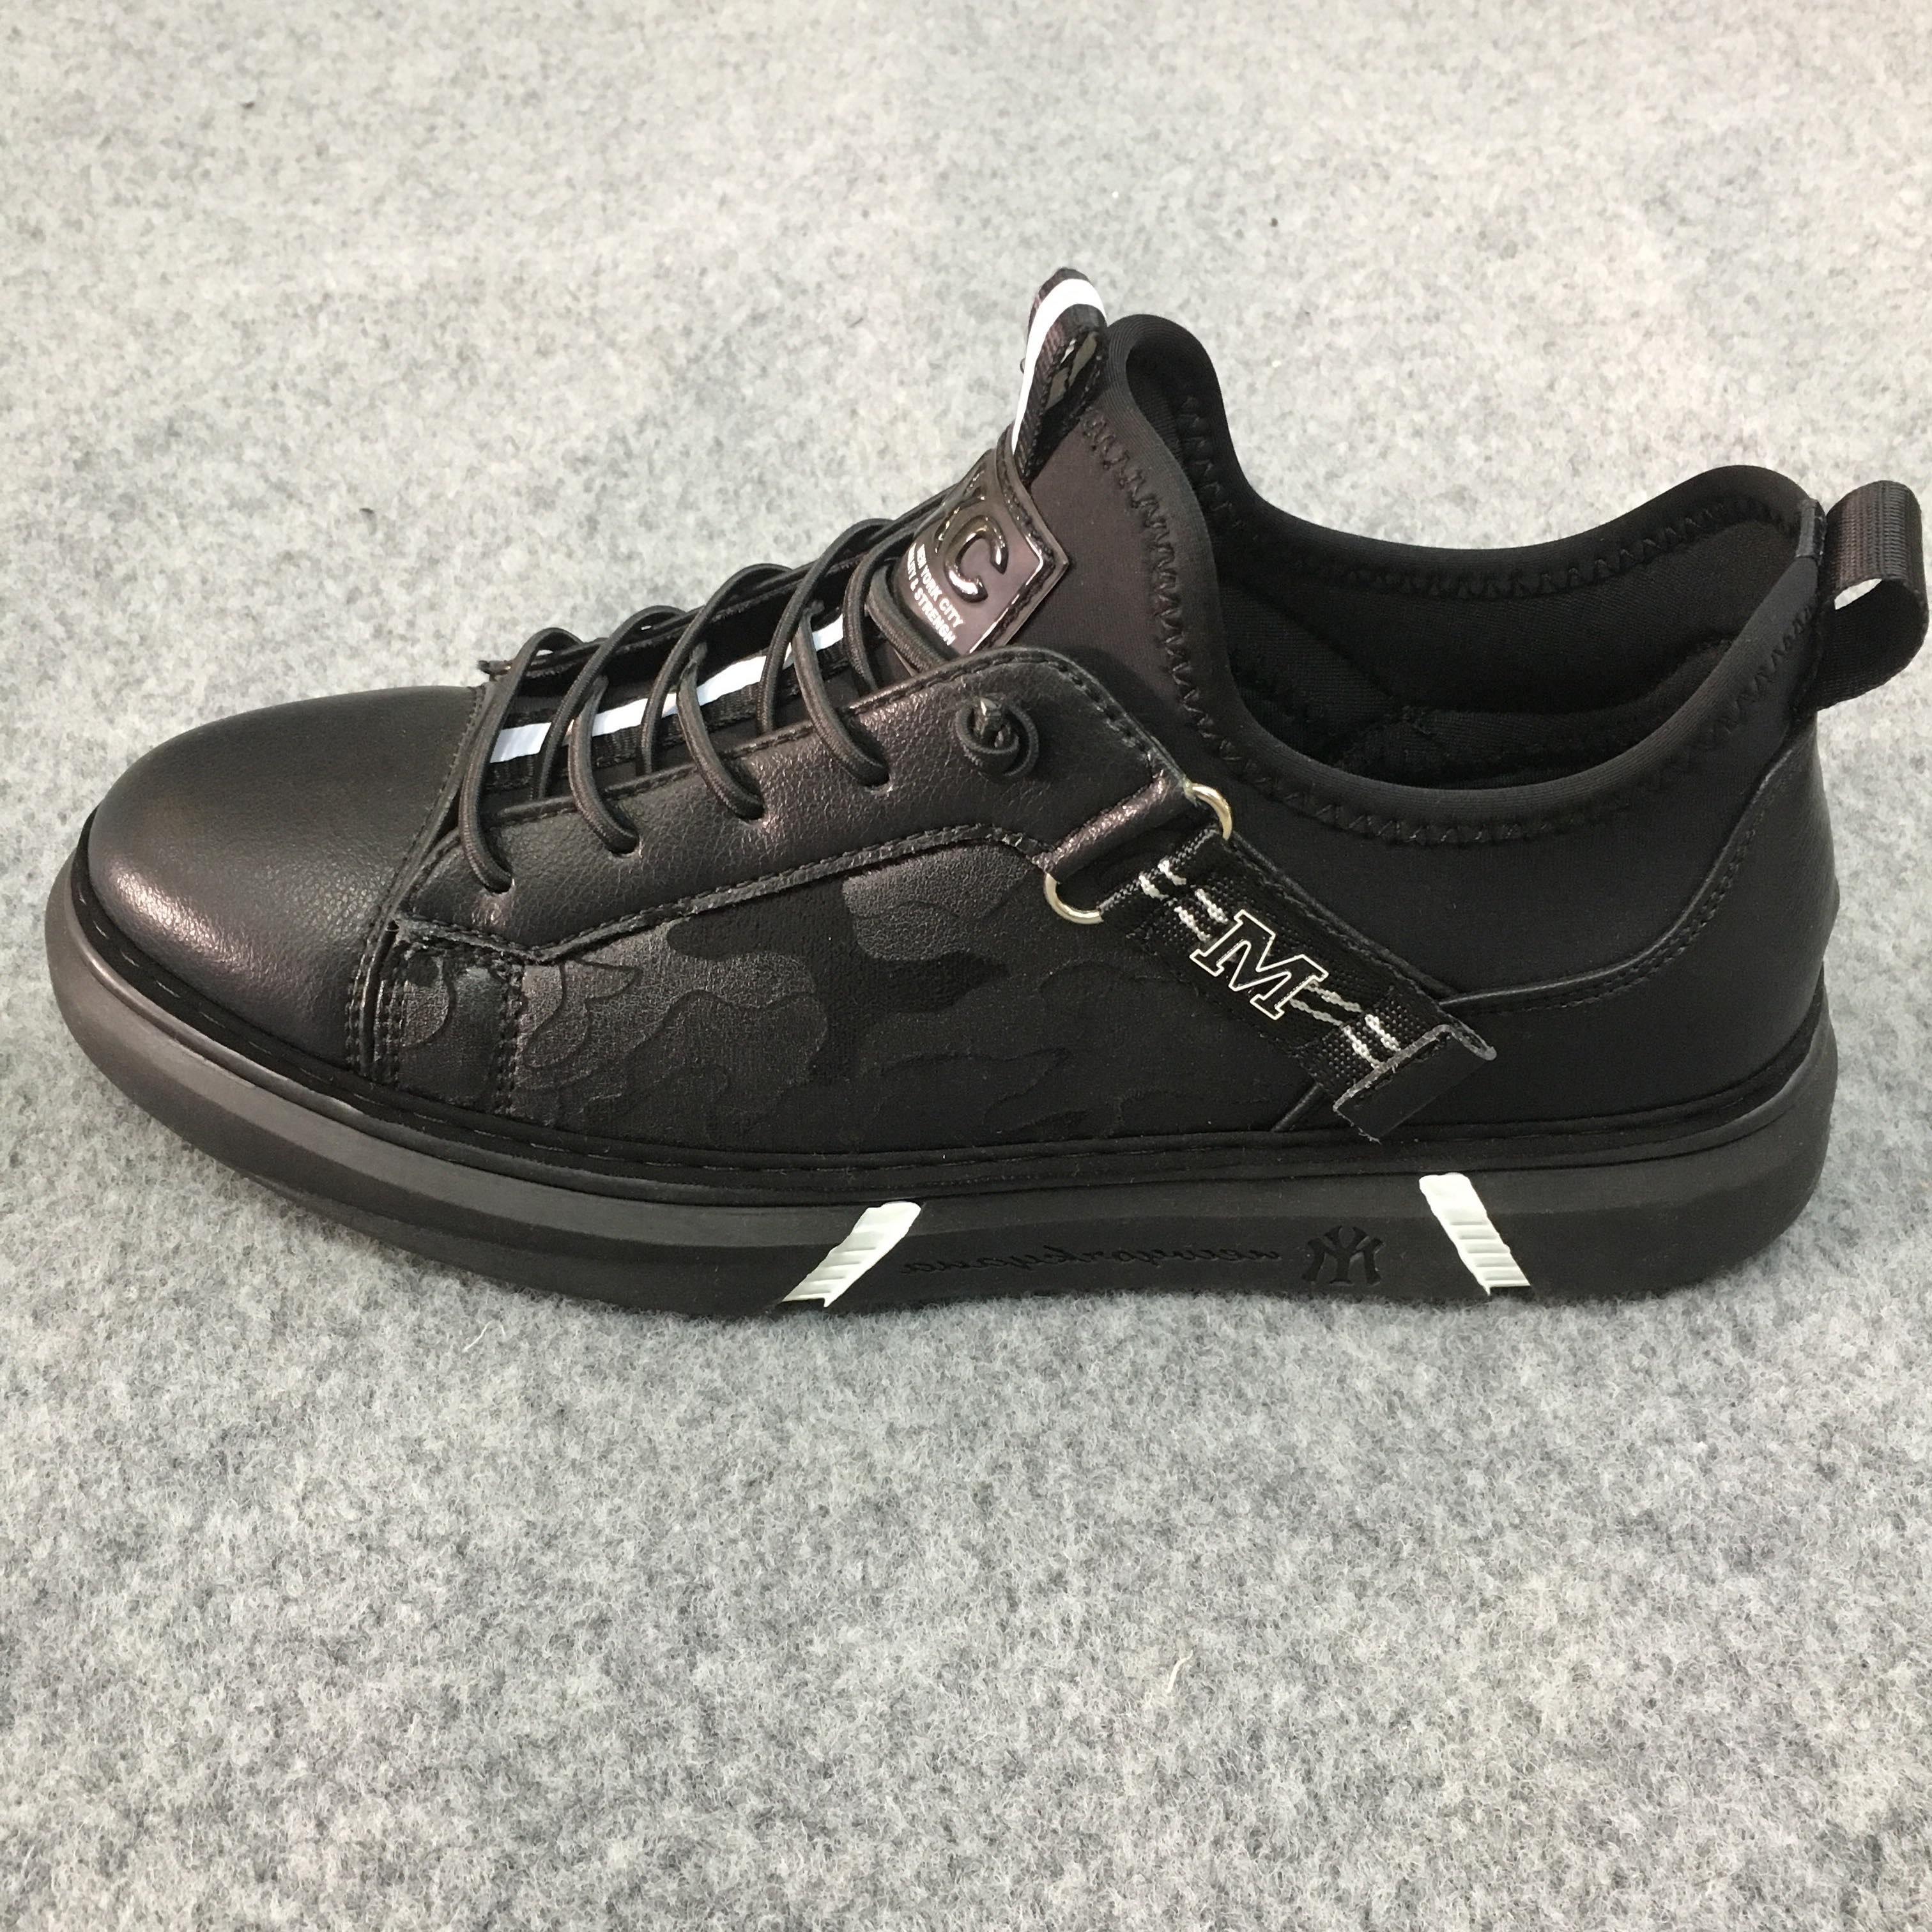 Giày sneakers nam NXC 9232 đen trắng